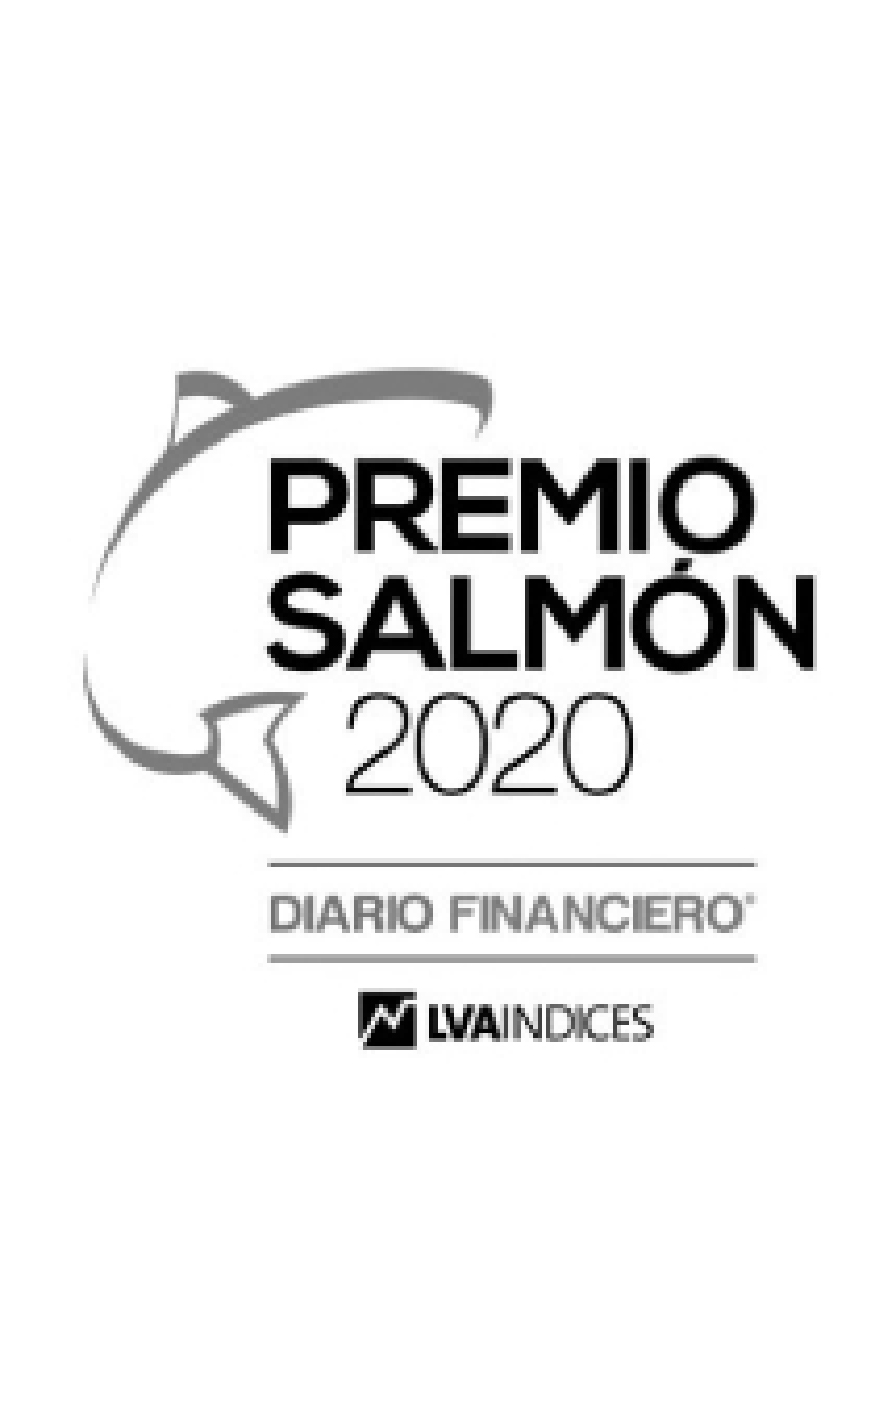 Premio Salmón 2020